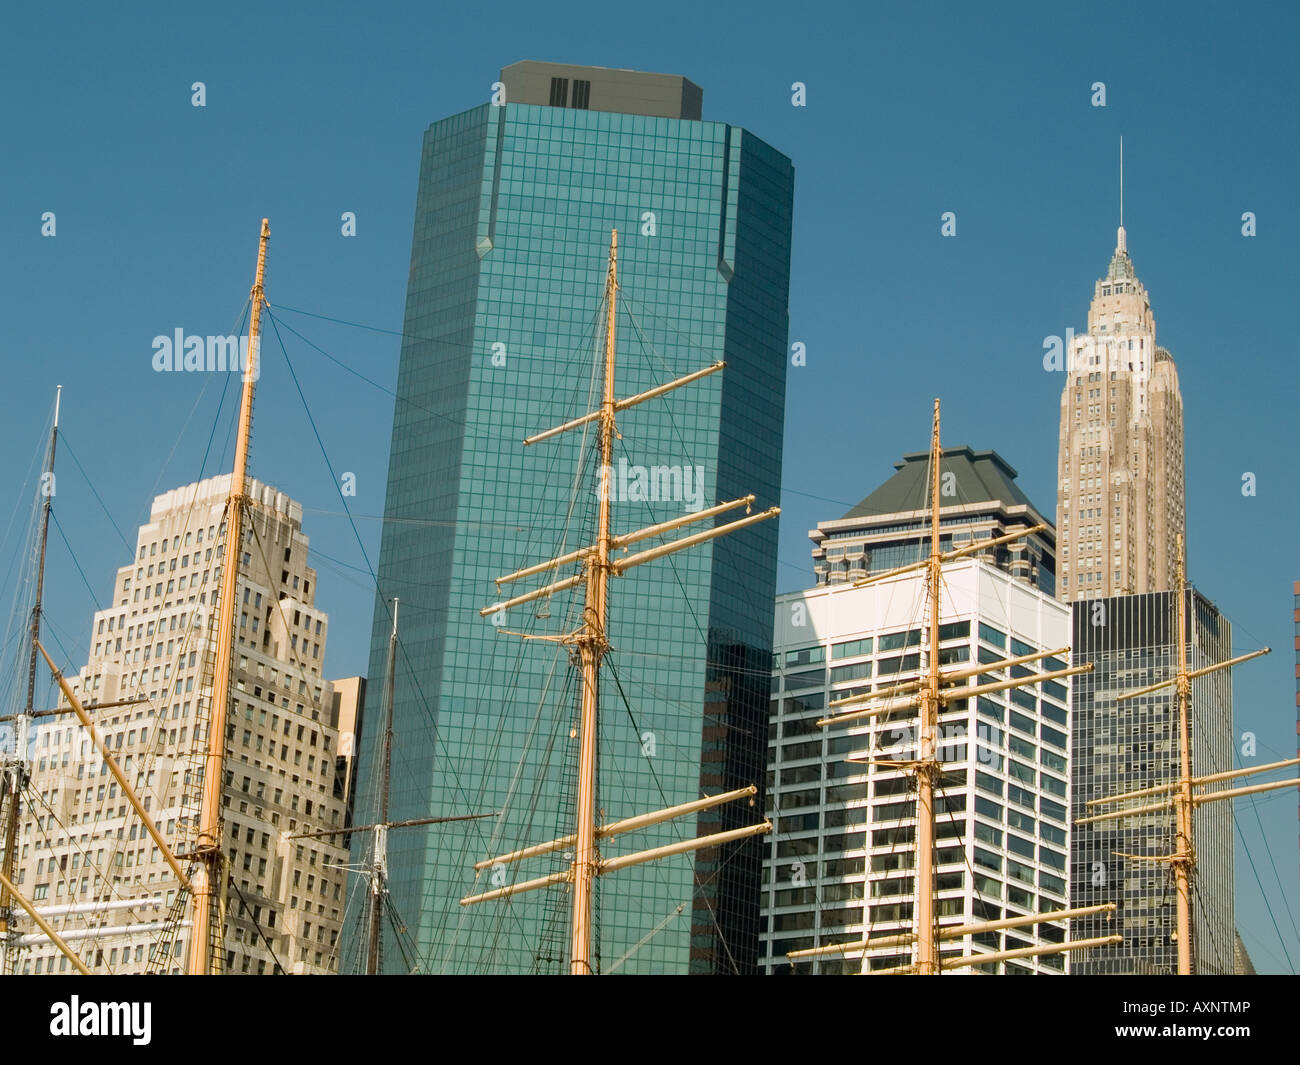 Mâts de vieux navires dans un contexte des gratte-ciel dans la région de South Street Seaport de New York USA Banque D'Images